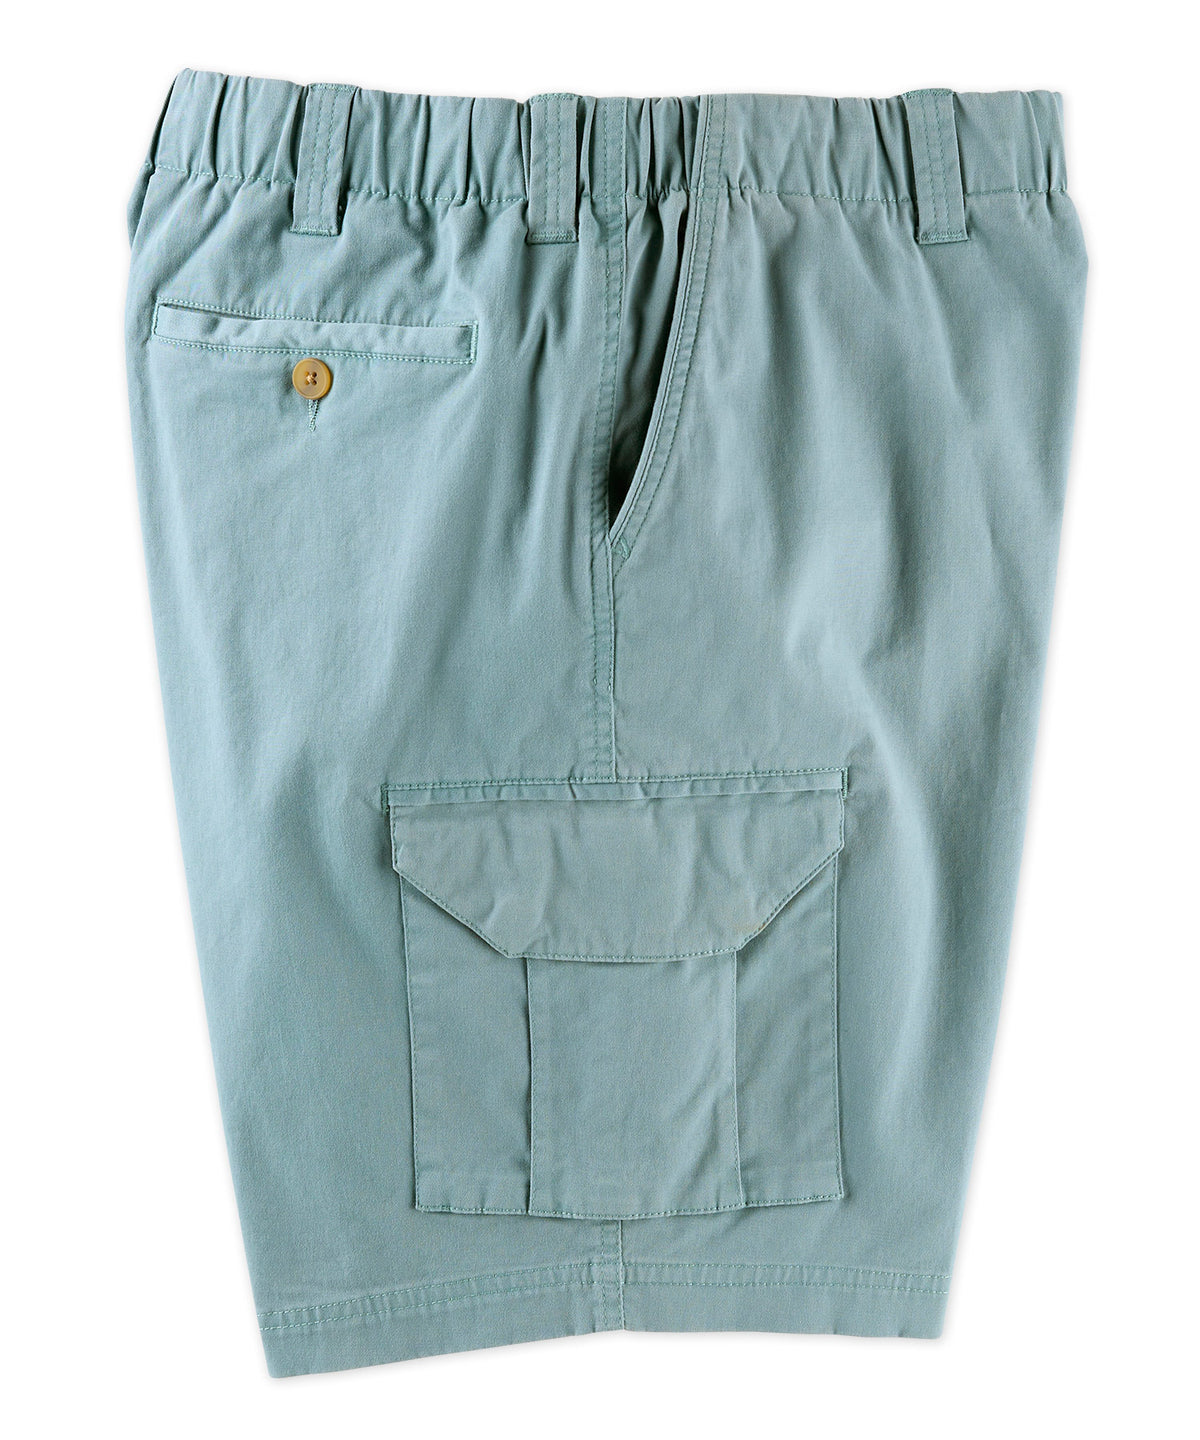 Pantaloncini cargo elasticizzati in vita elasticizzata in twill elasticizzato Westport 1989, Men's Big & Tall